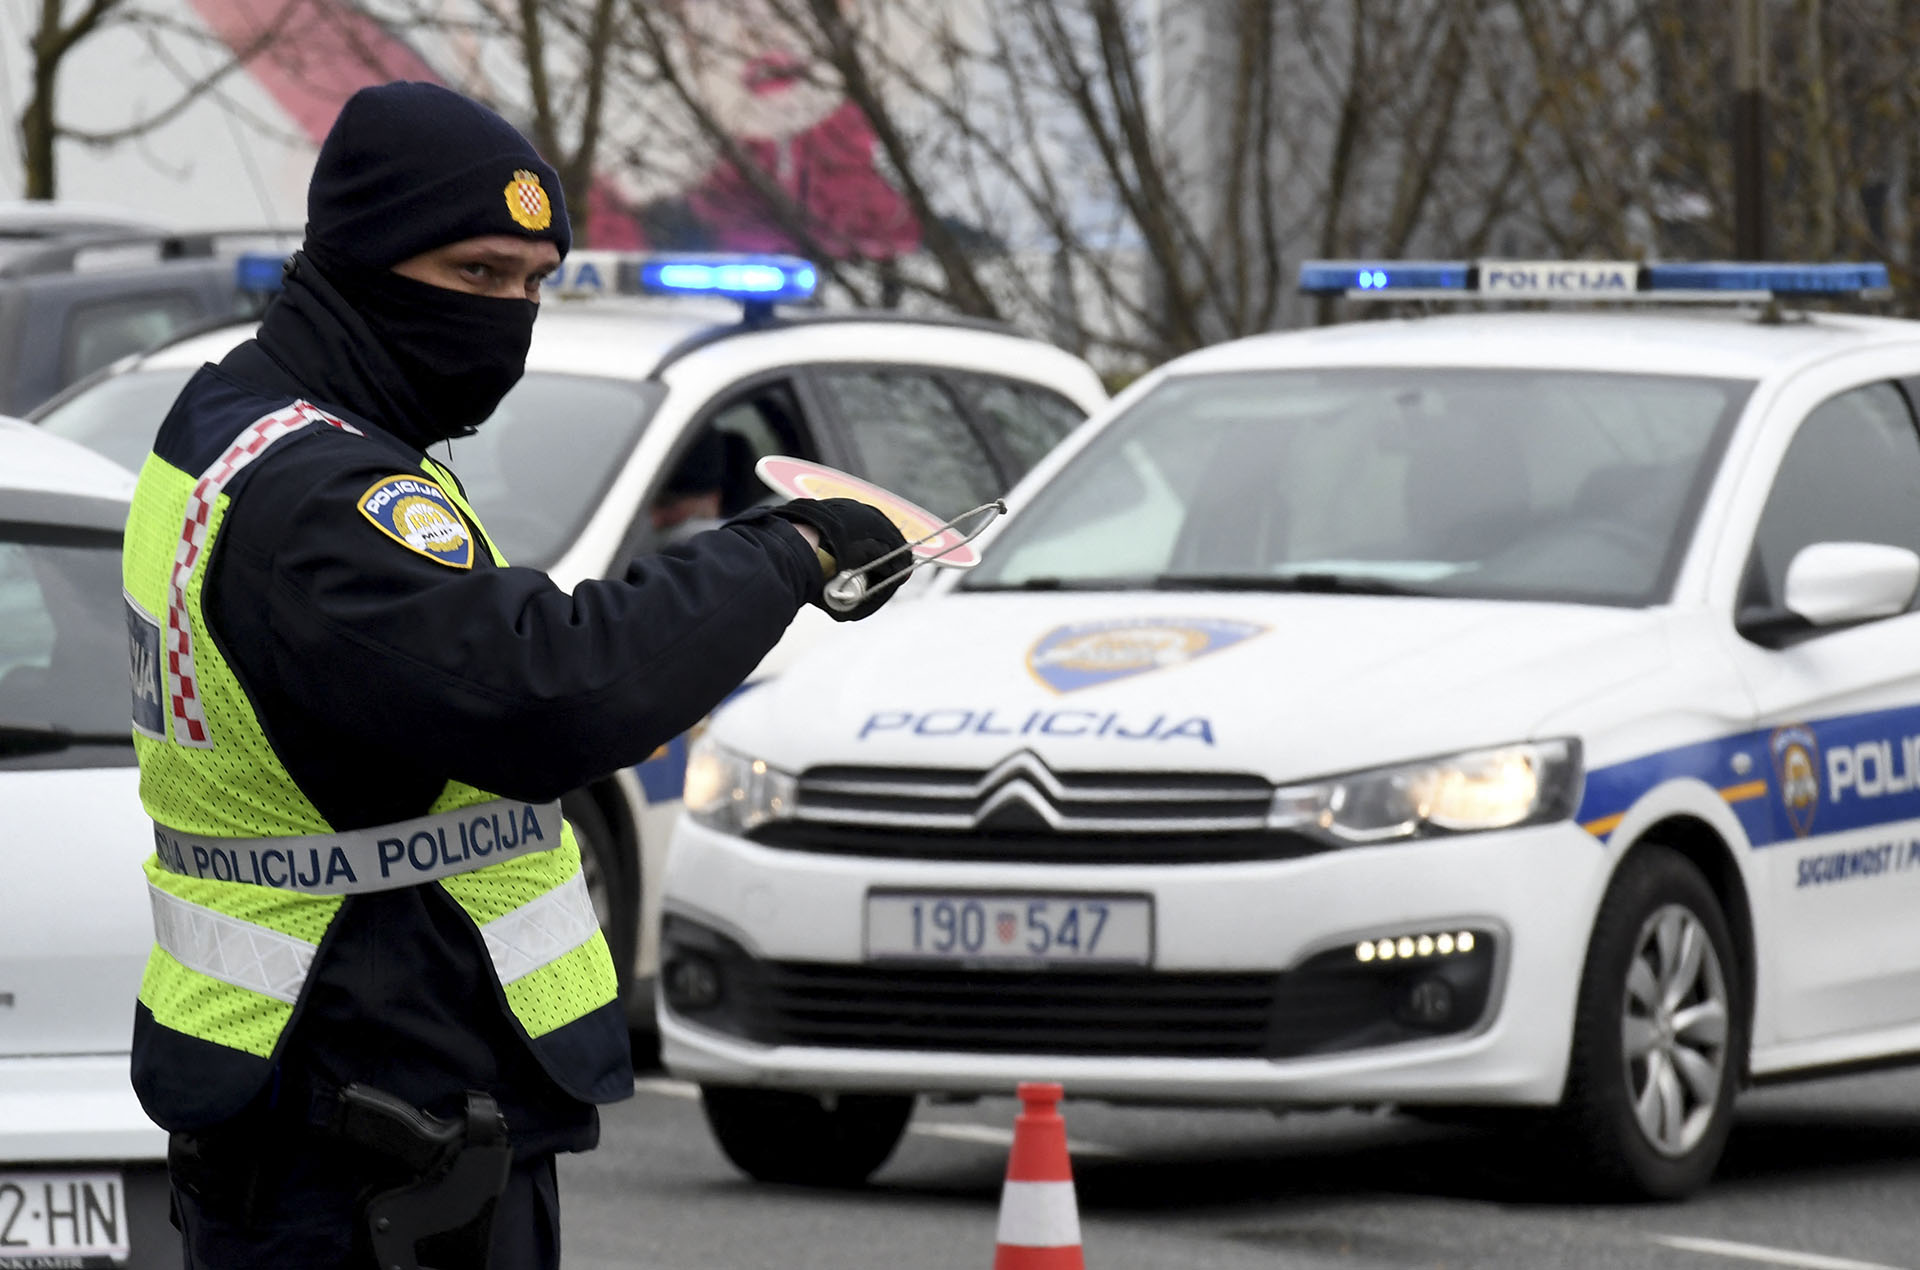 5 éves kisfiú holttestét találták meg egy horvátországi parkoló autójában